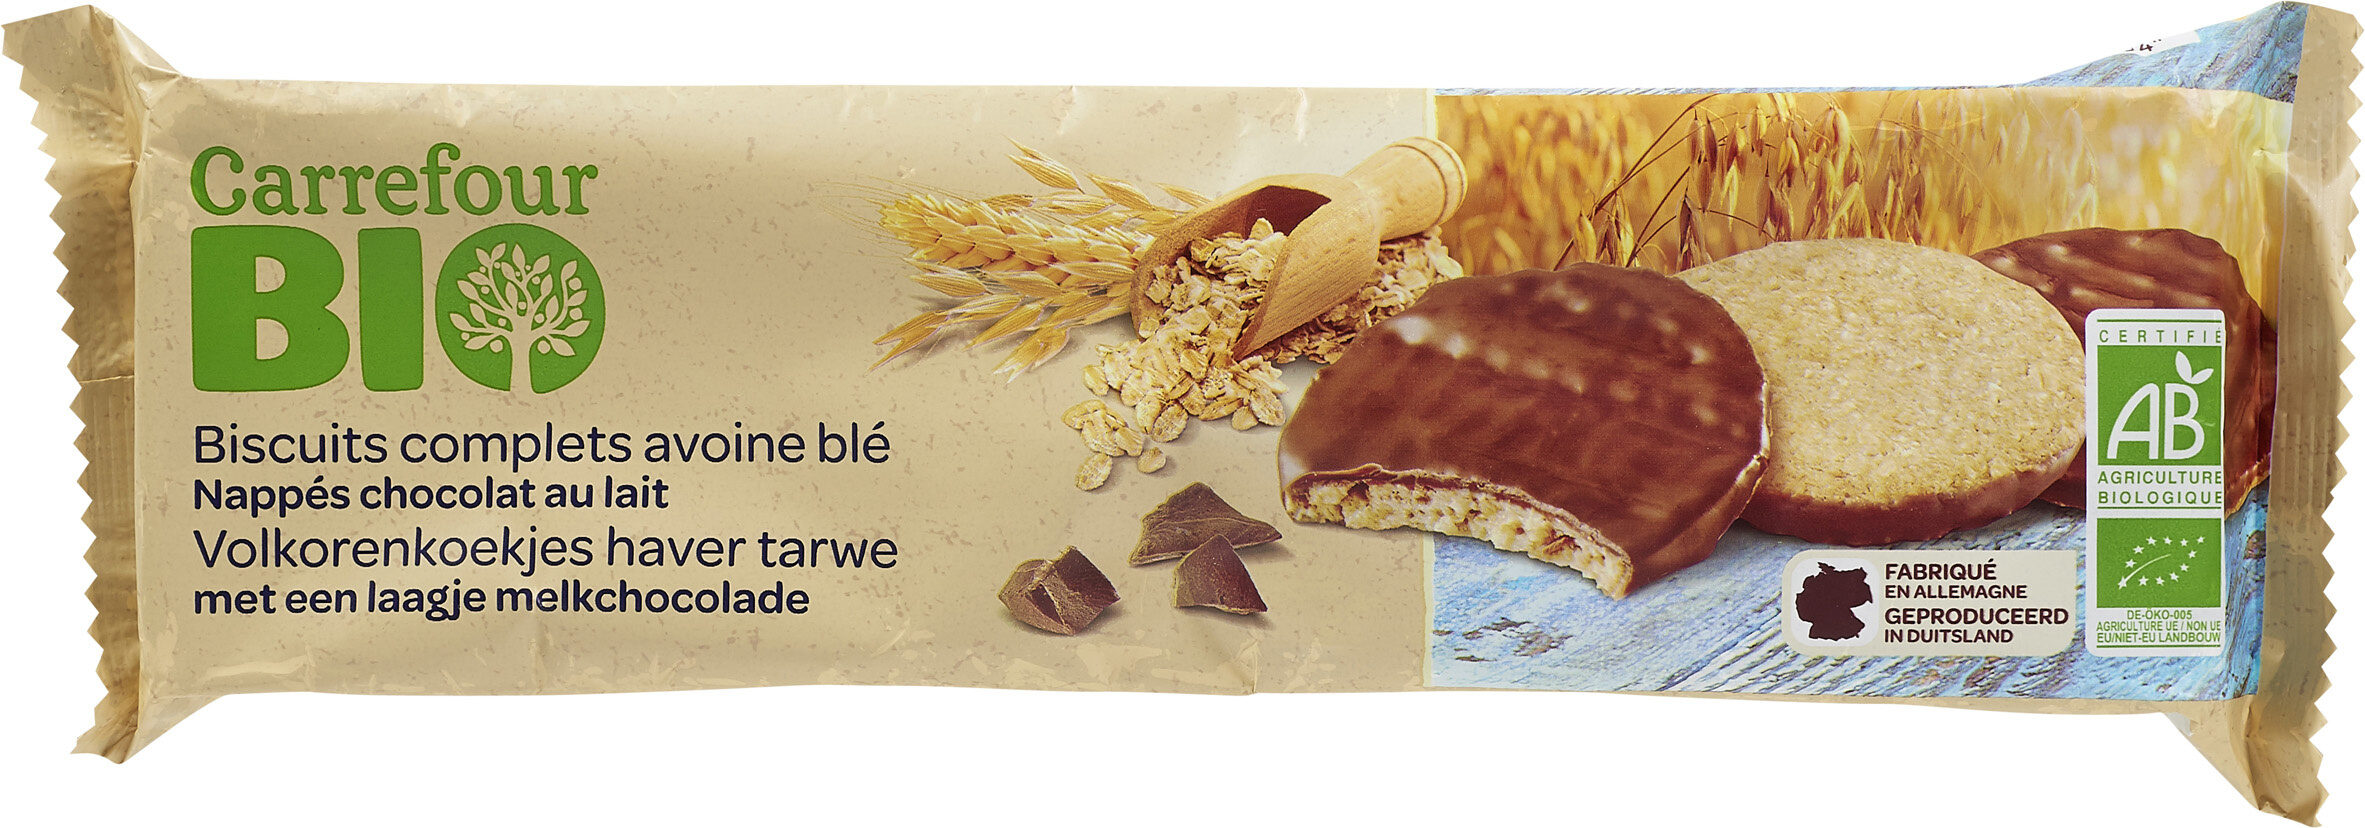 Biscuits complets avoine blé Nappés Chocolat au lait - Prodotto - fr